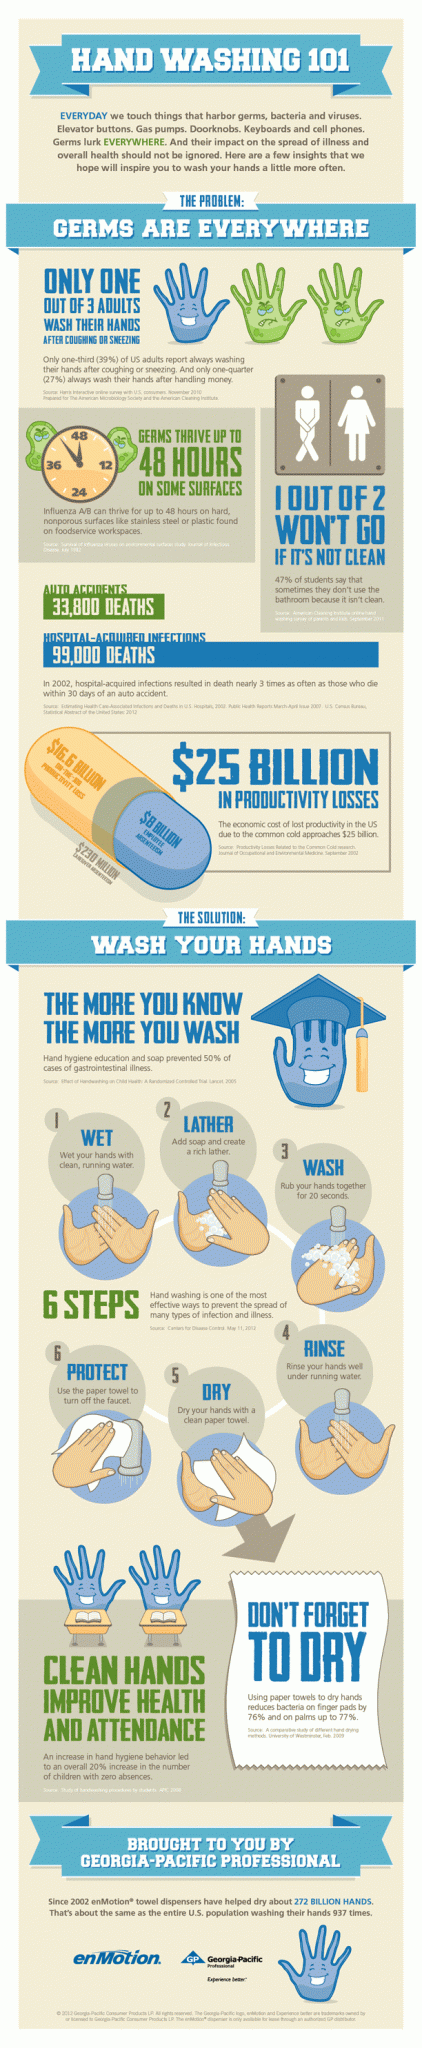 hand washing infographic